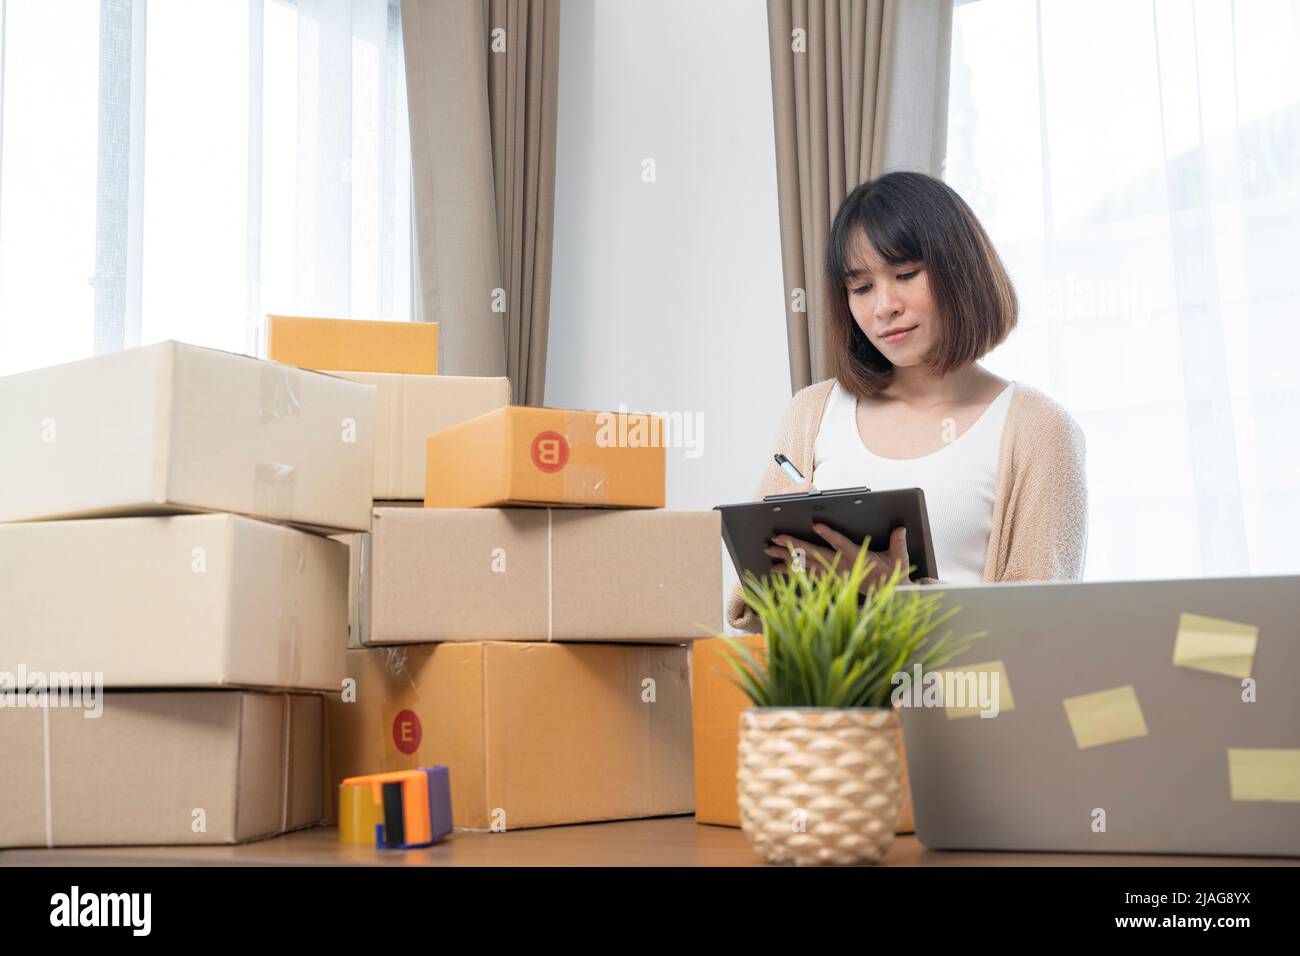 Las mujeres asiáticas cuentan cajas antes de enviar a los clientes, el trabajo desde casa, los propietarios de pequeñas empresas o los empresarios de pequeñas empresas que acaba de empezar a trabajar Foto de stock